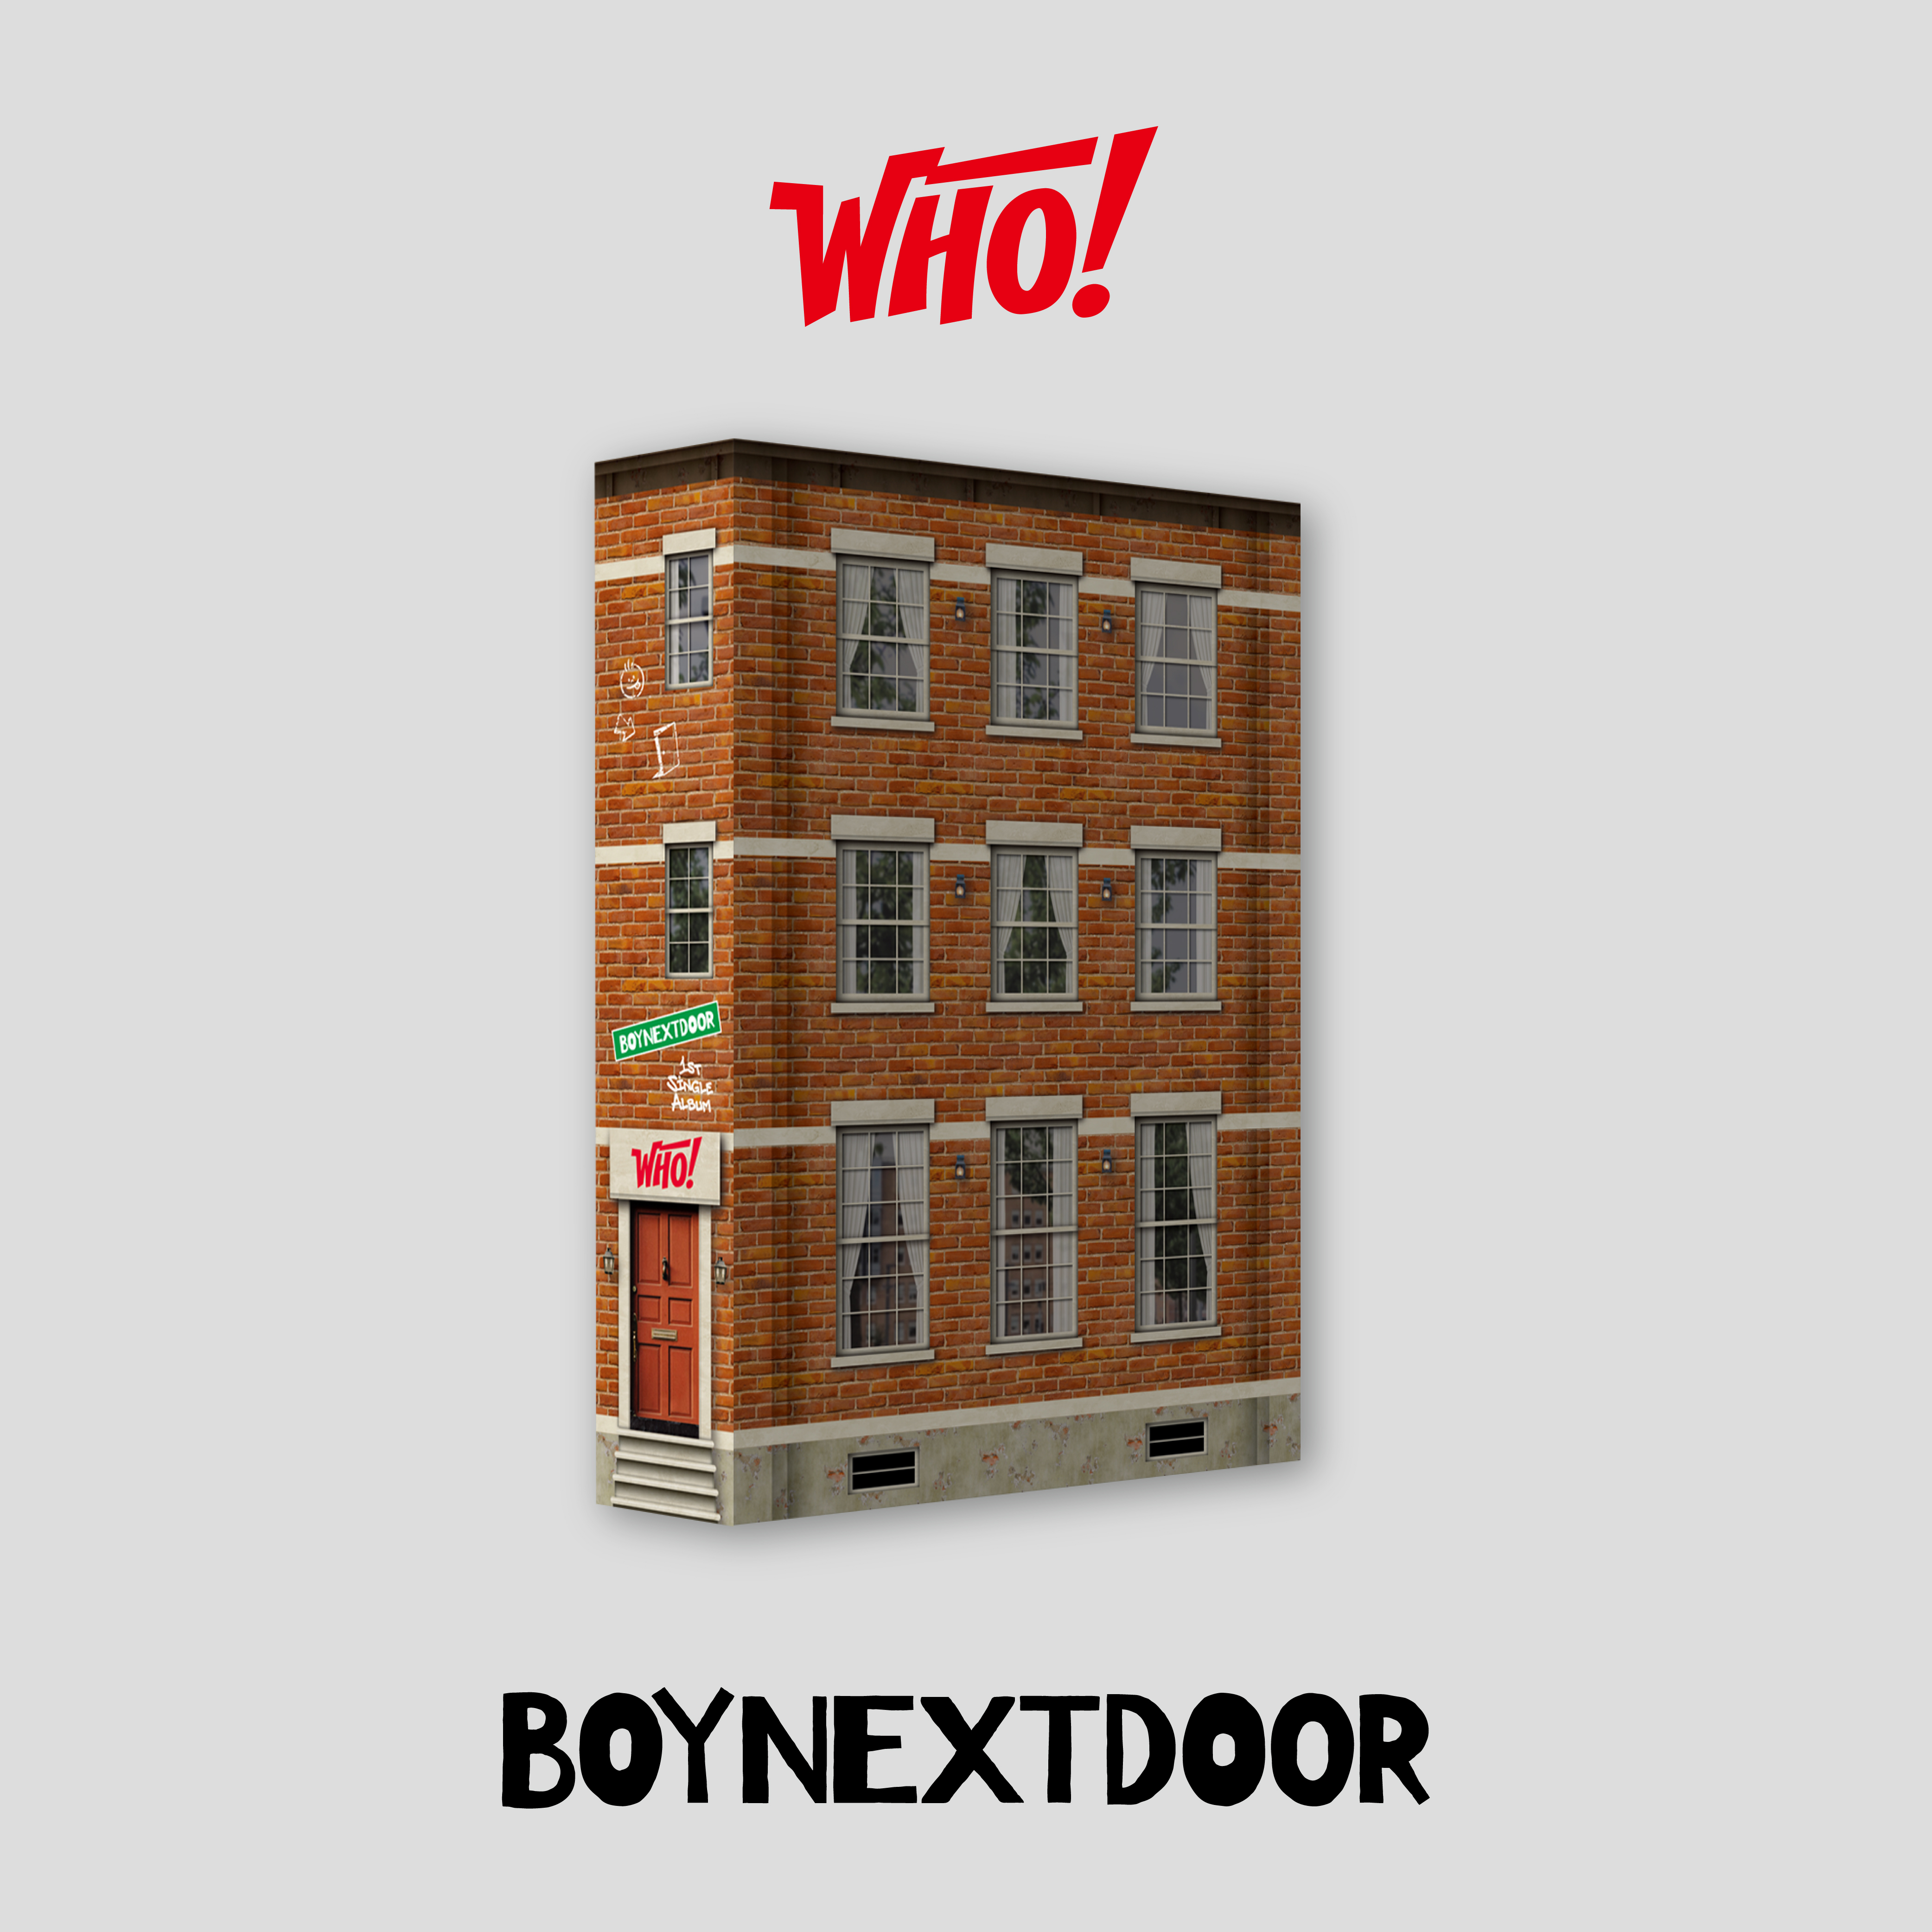 [全款 裸专 第二批 截止至6.5早7点]BOYNEXTDOOR - 1st Single [WHO!]_BND九站联合